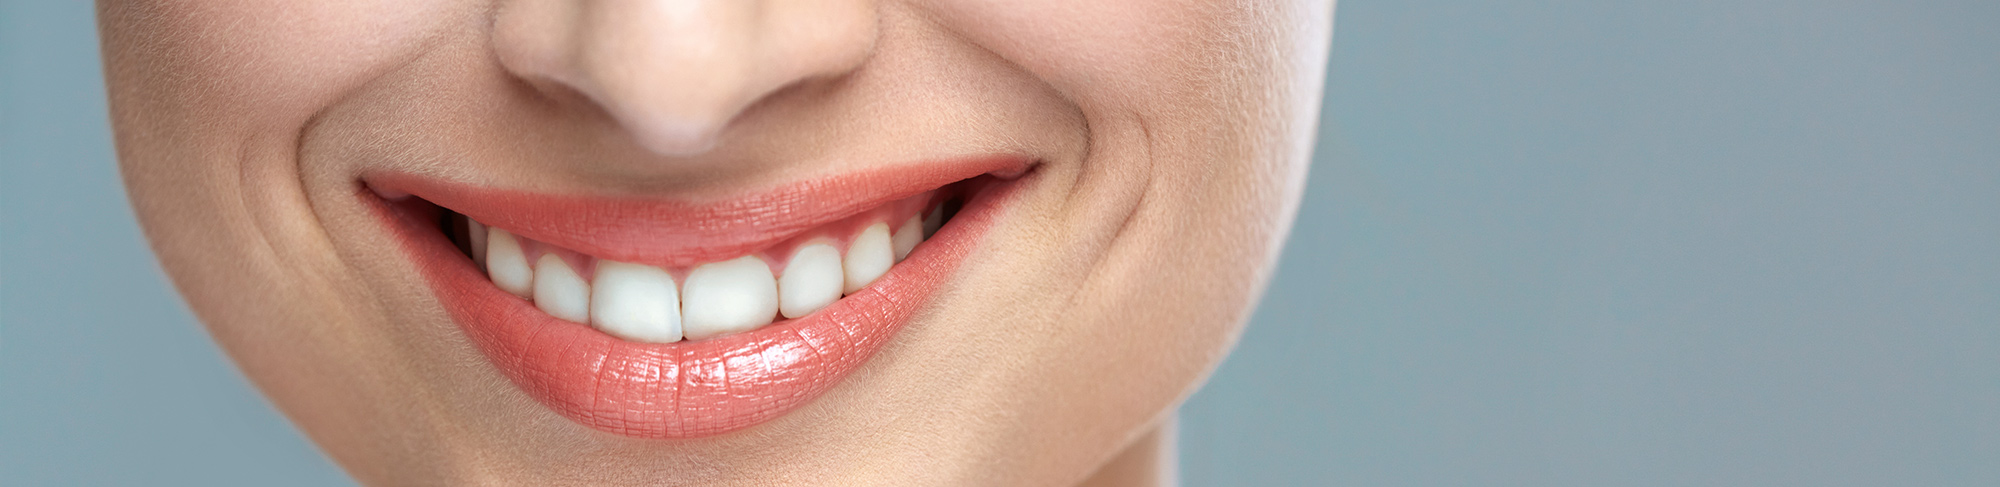 Für ein strahlendes Lächeln – so pflegen Sie Ihre Zahnimplantate richtig